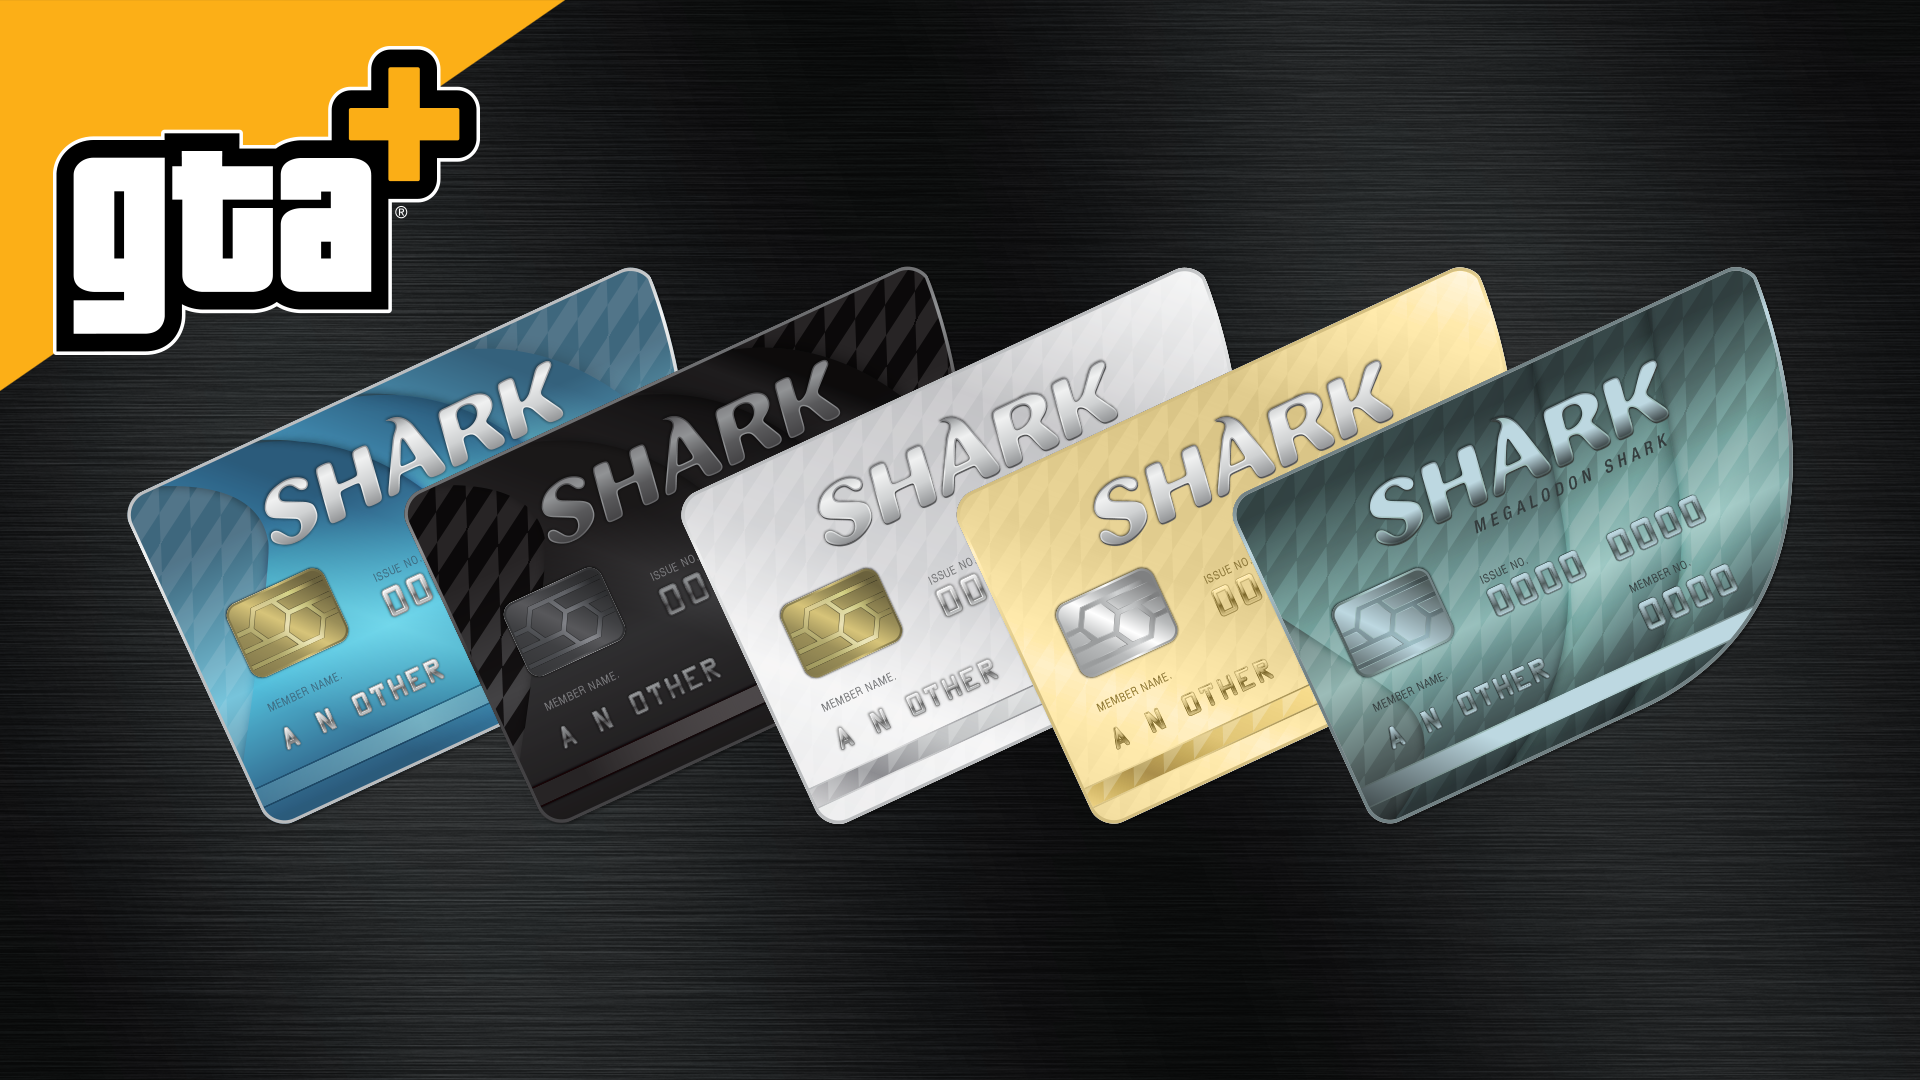 Tirez parti de cartes GTA+ Cards spéciales qui donnent encore plus de GTA$ à chaque achat.